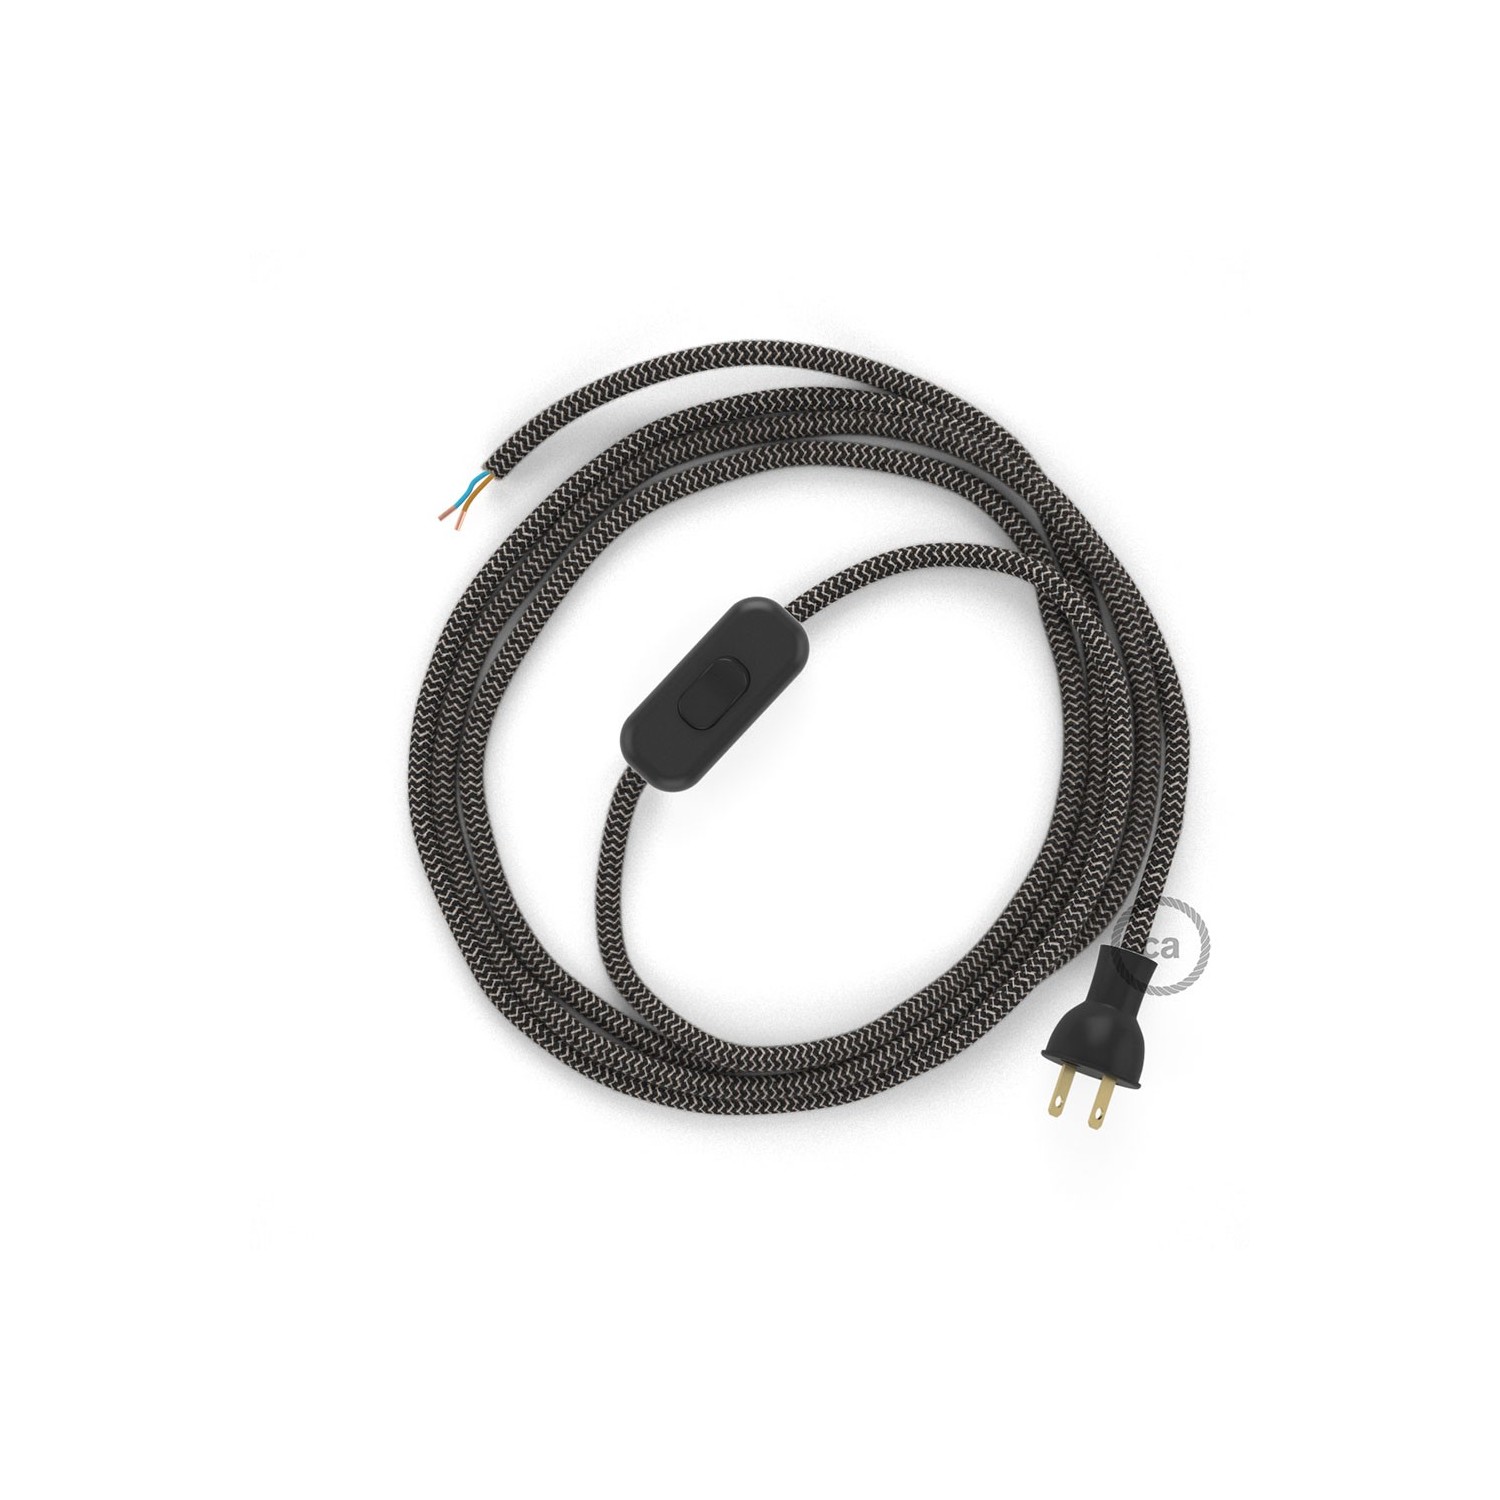 Cableado para lámpara de mesa, cable RD74 Algodón y Lino ZigZag Antracita 1,8 m. Elige el color de la clavija y del interruptor!